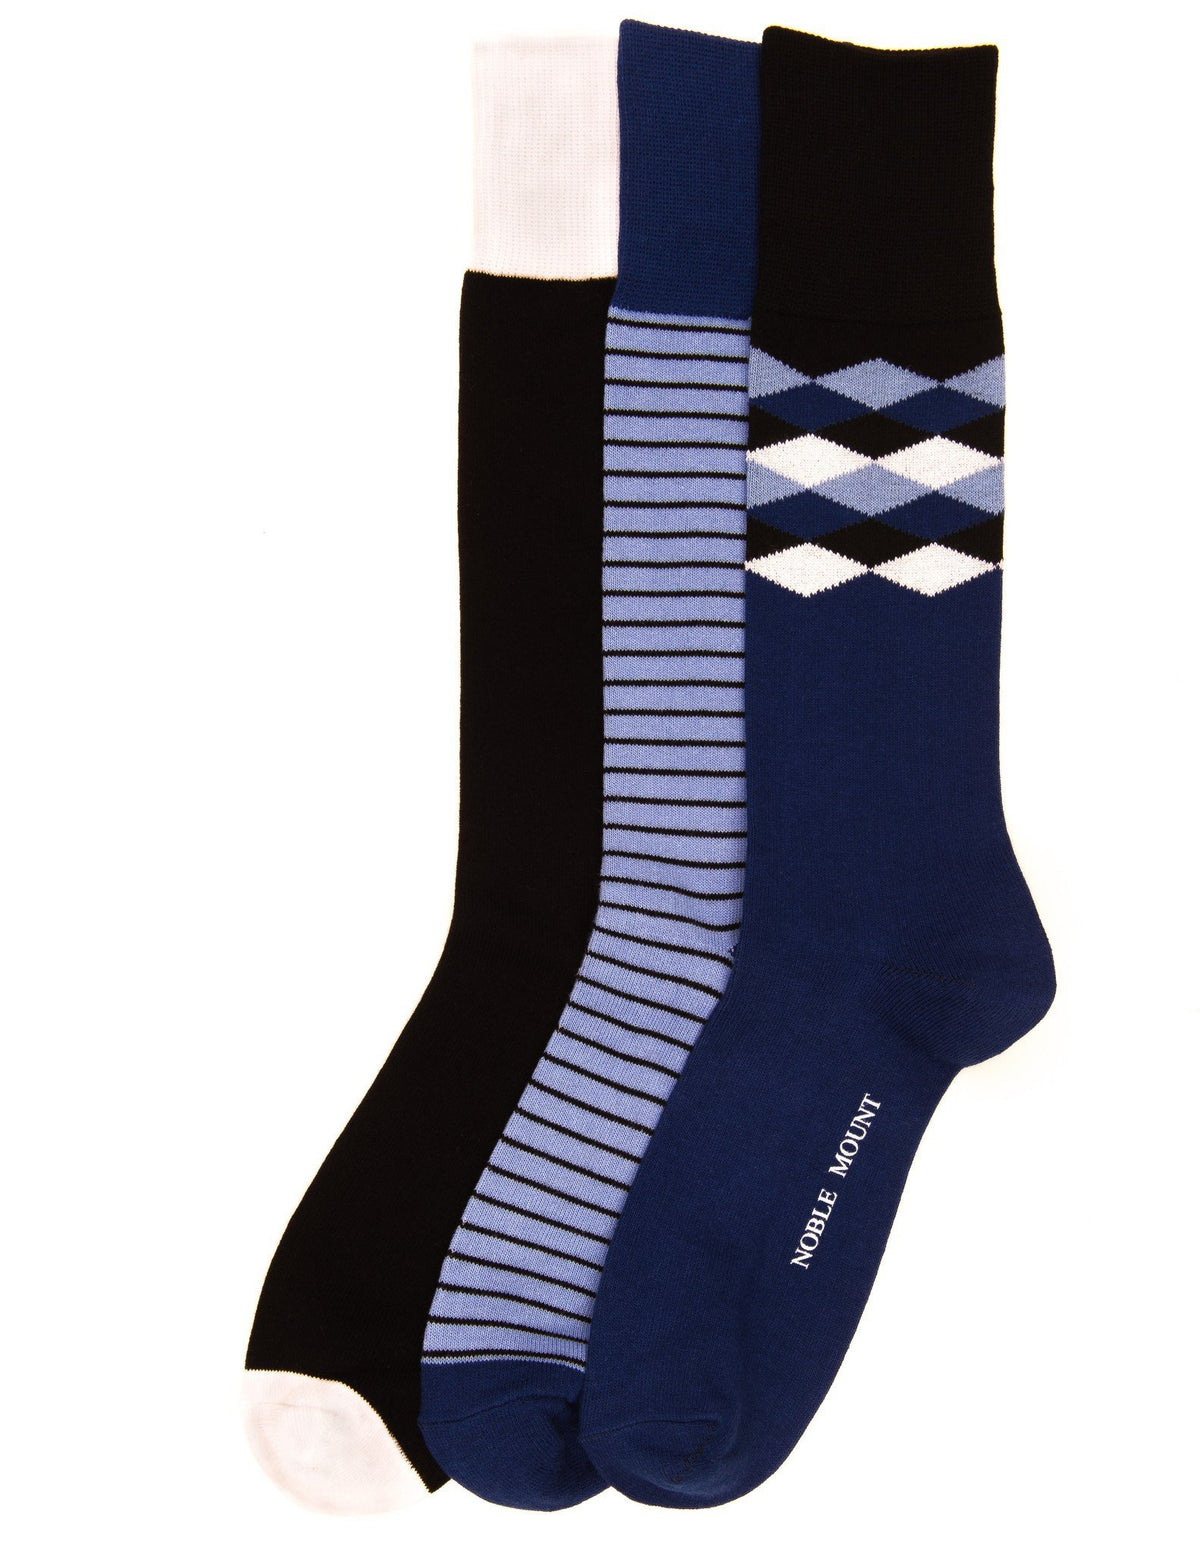 Men's Combed Cotton Dress Socks 3-Pack - Set A6